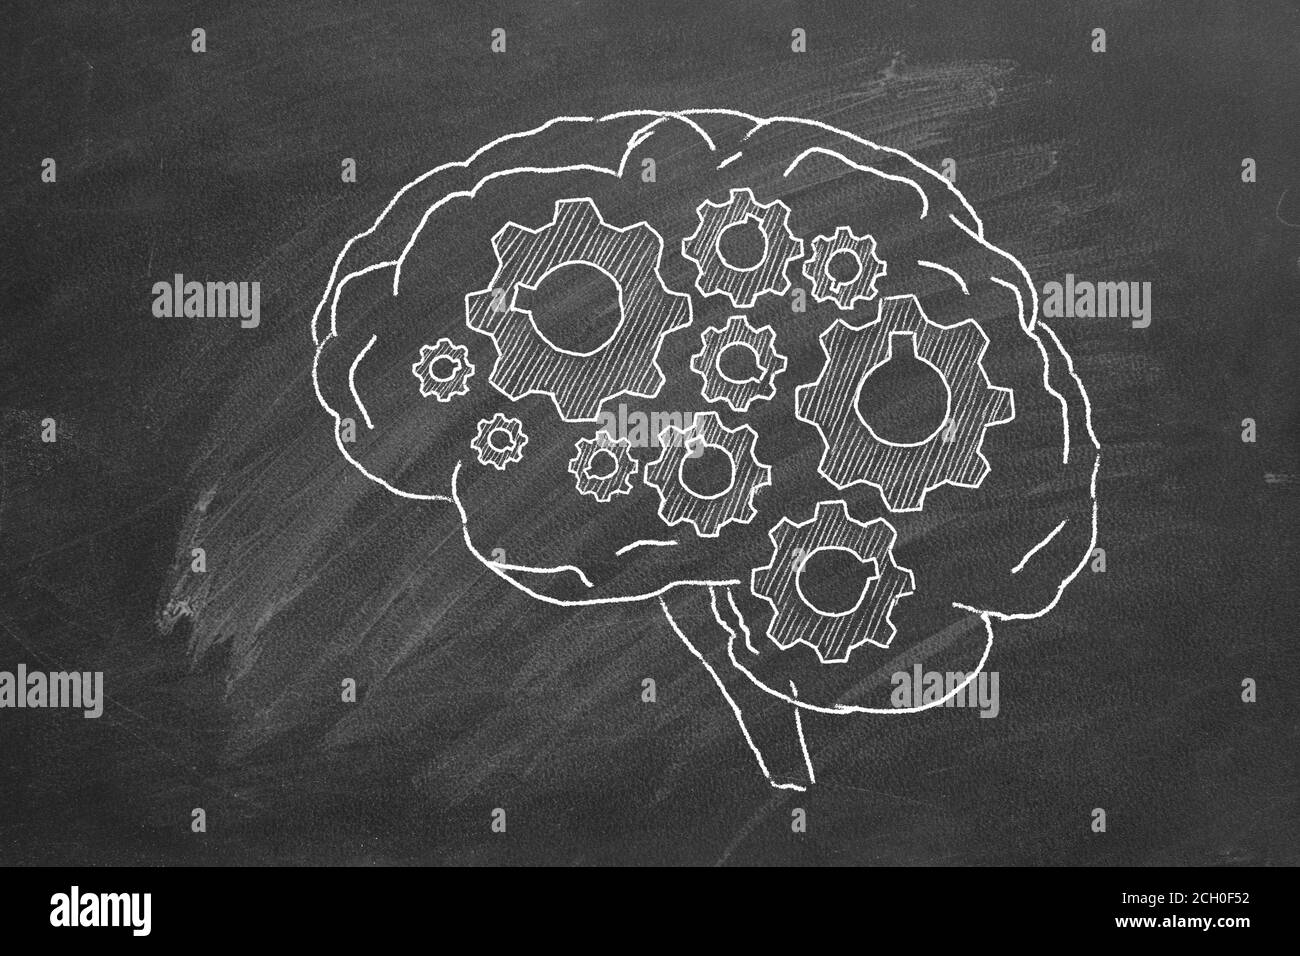 Cerveau humain avec roues dentées main tirée à la craie sur un tableau noir. Banque D'Images